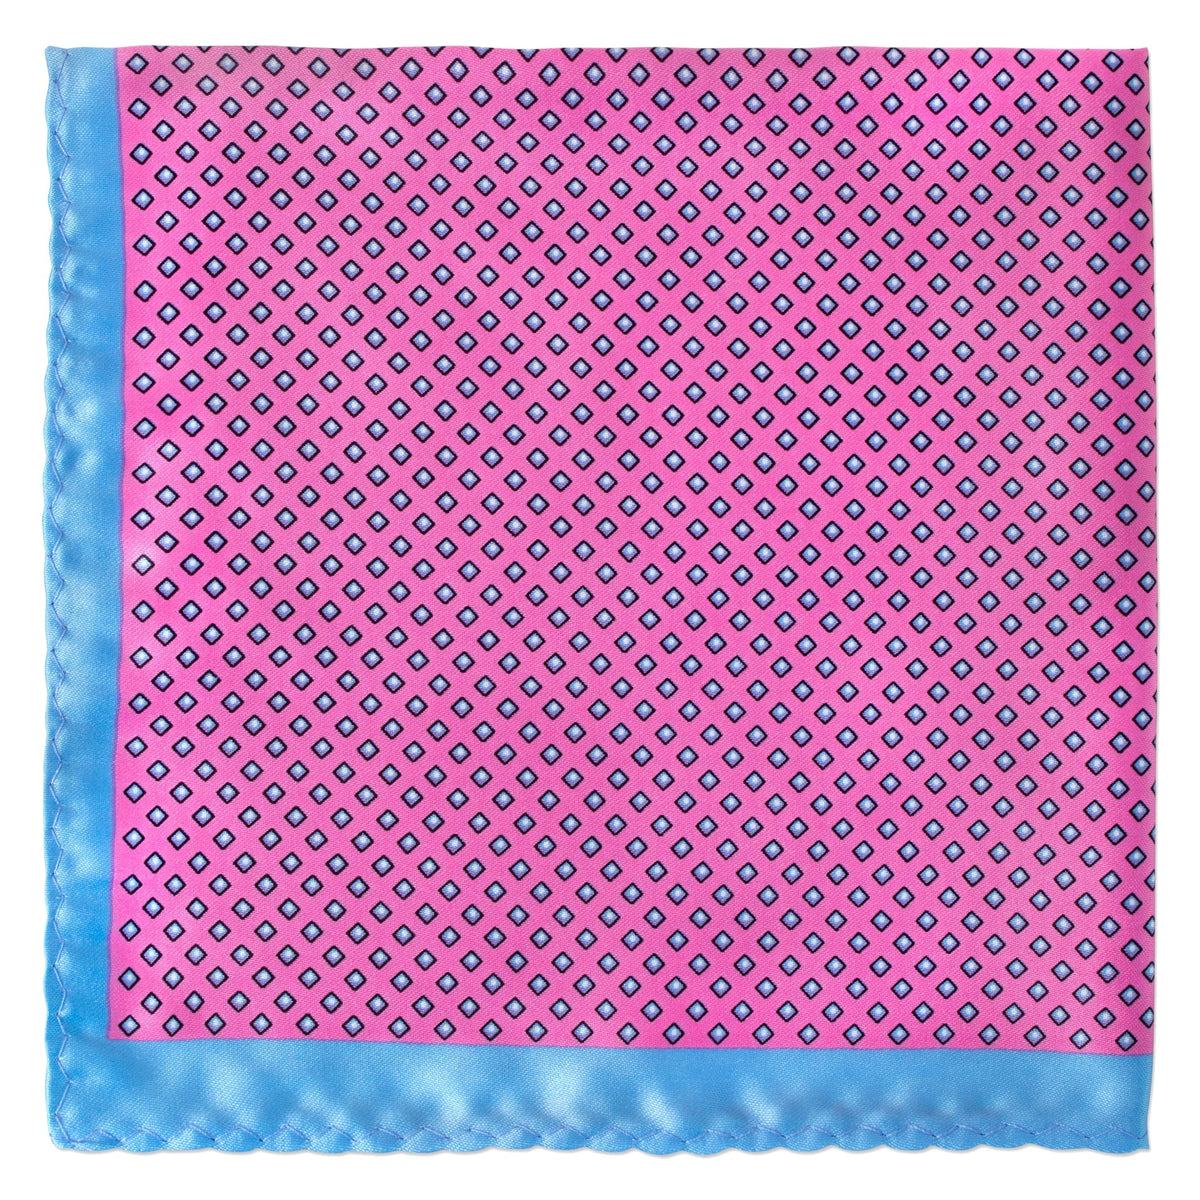 Square Dots Pocket Square-Pocket Squares-MarZthomson-Pink - blue-Cufflinks.com.sg